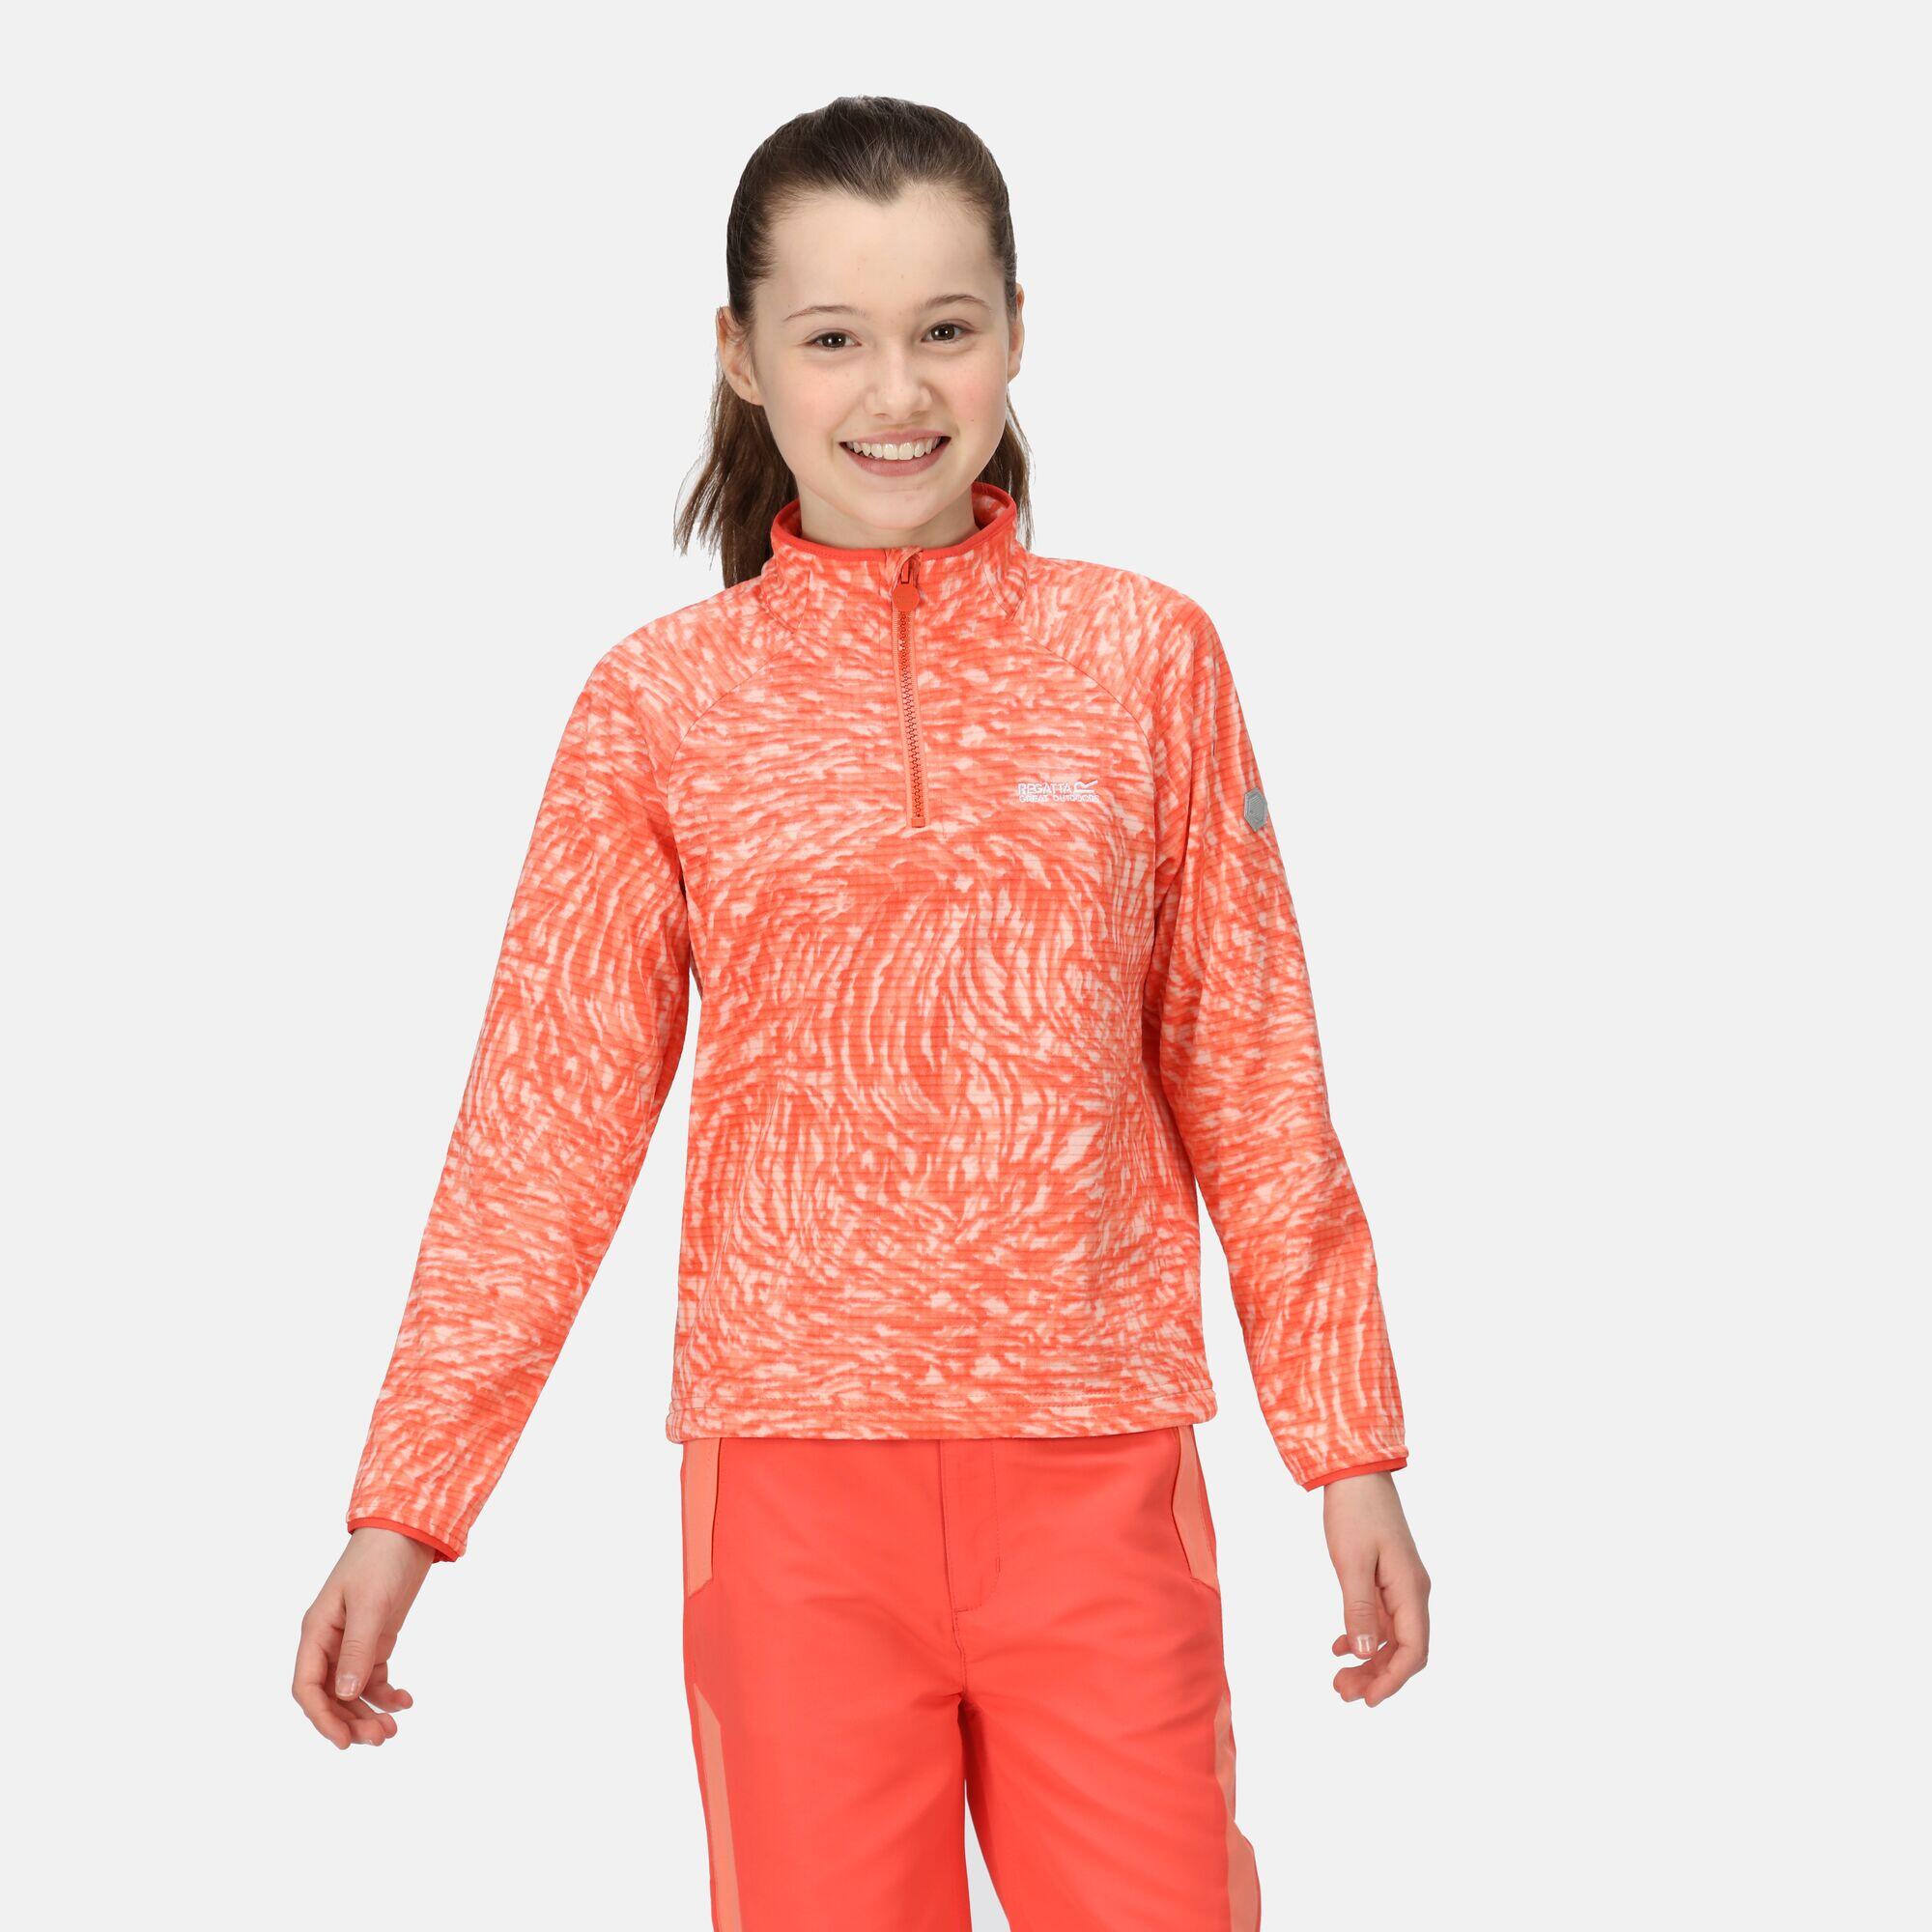 Junior Highton Walking Kids Half-Zip Fleece - Orange Coral 3/5